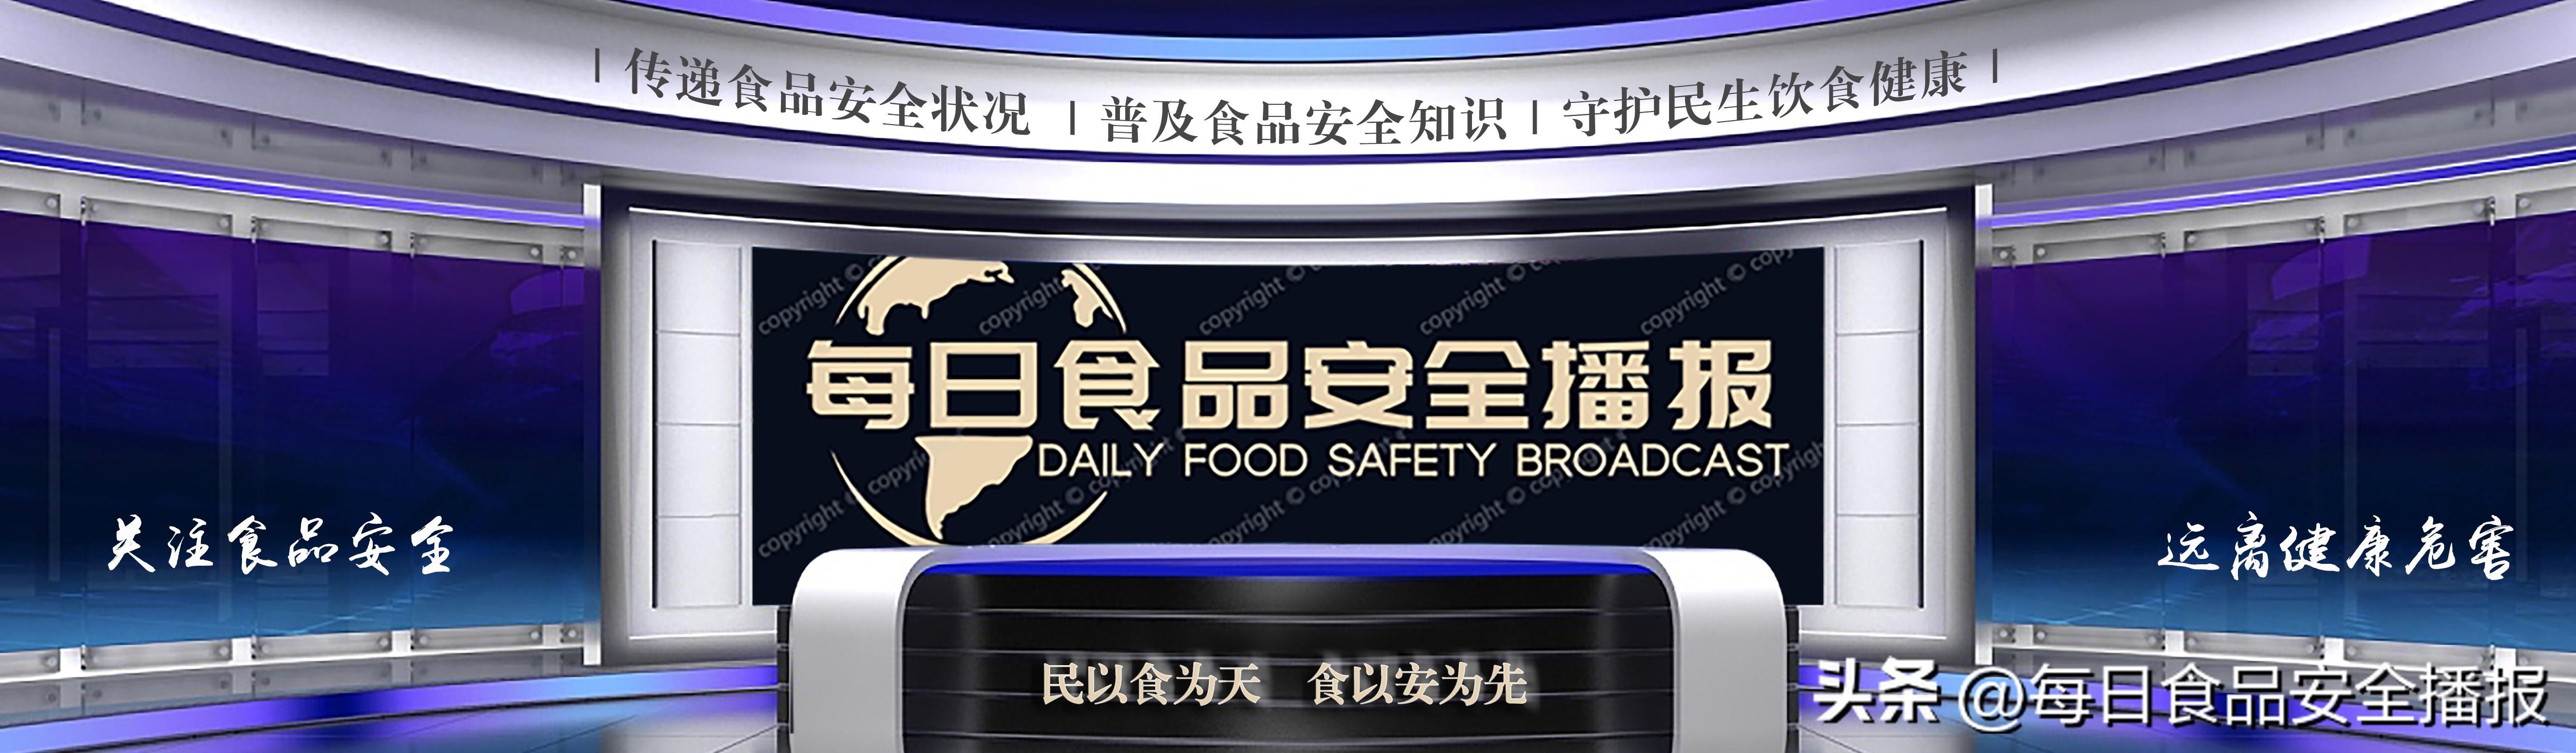 小心，海南曝光19批问题食品，含炭烧咖啡、乌鸡、猪肉、水芹